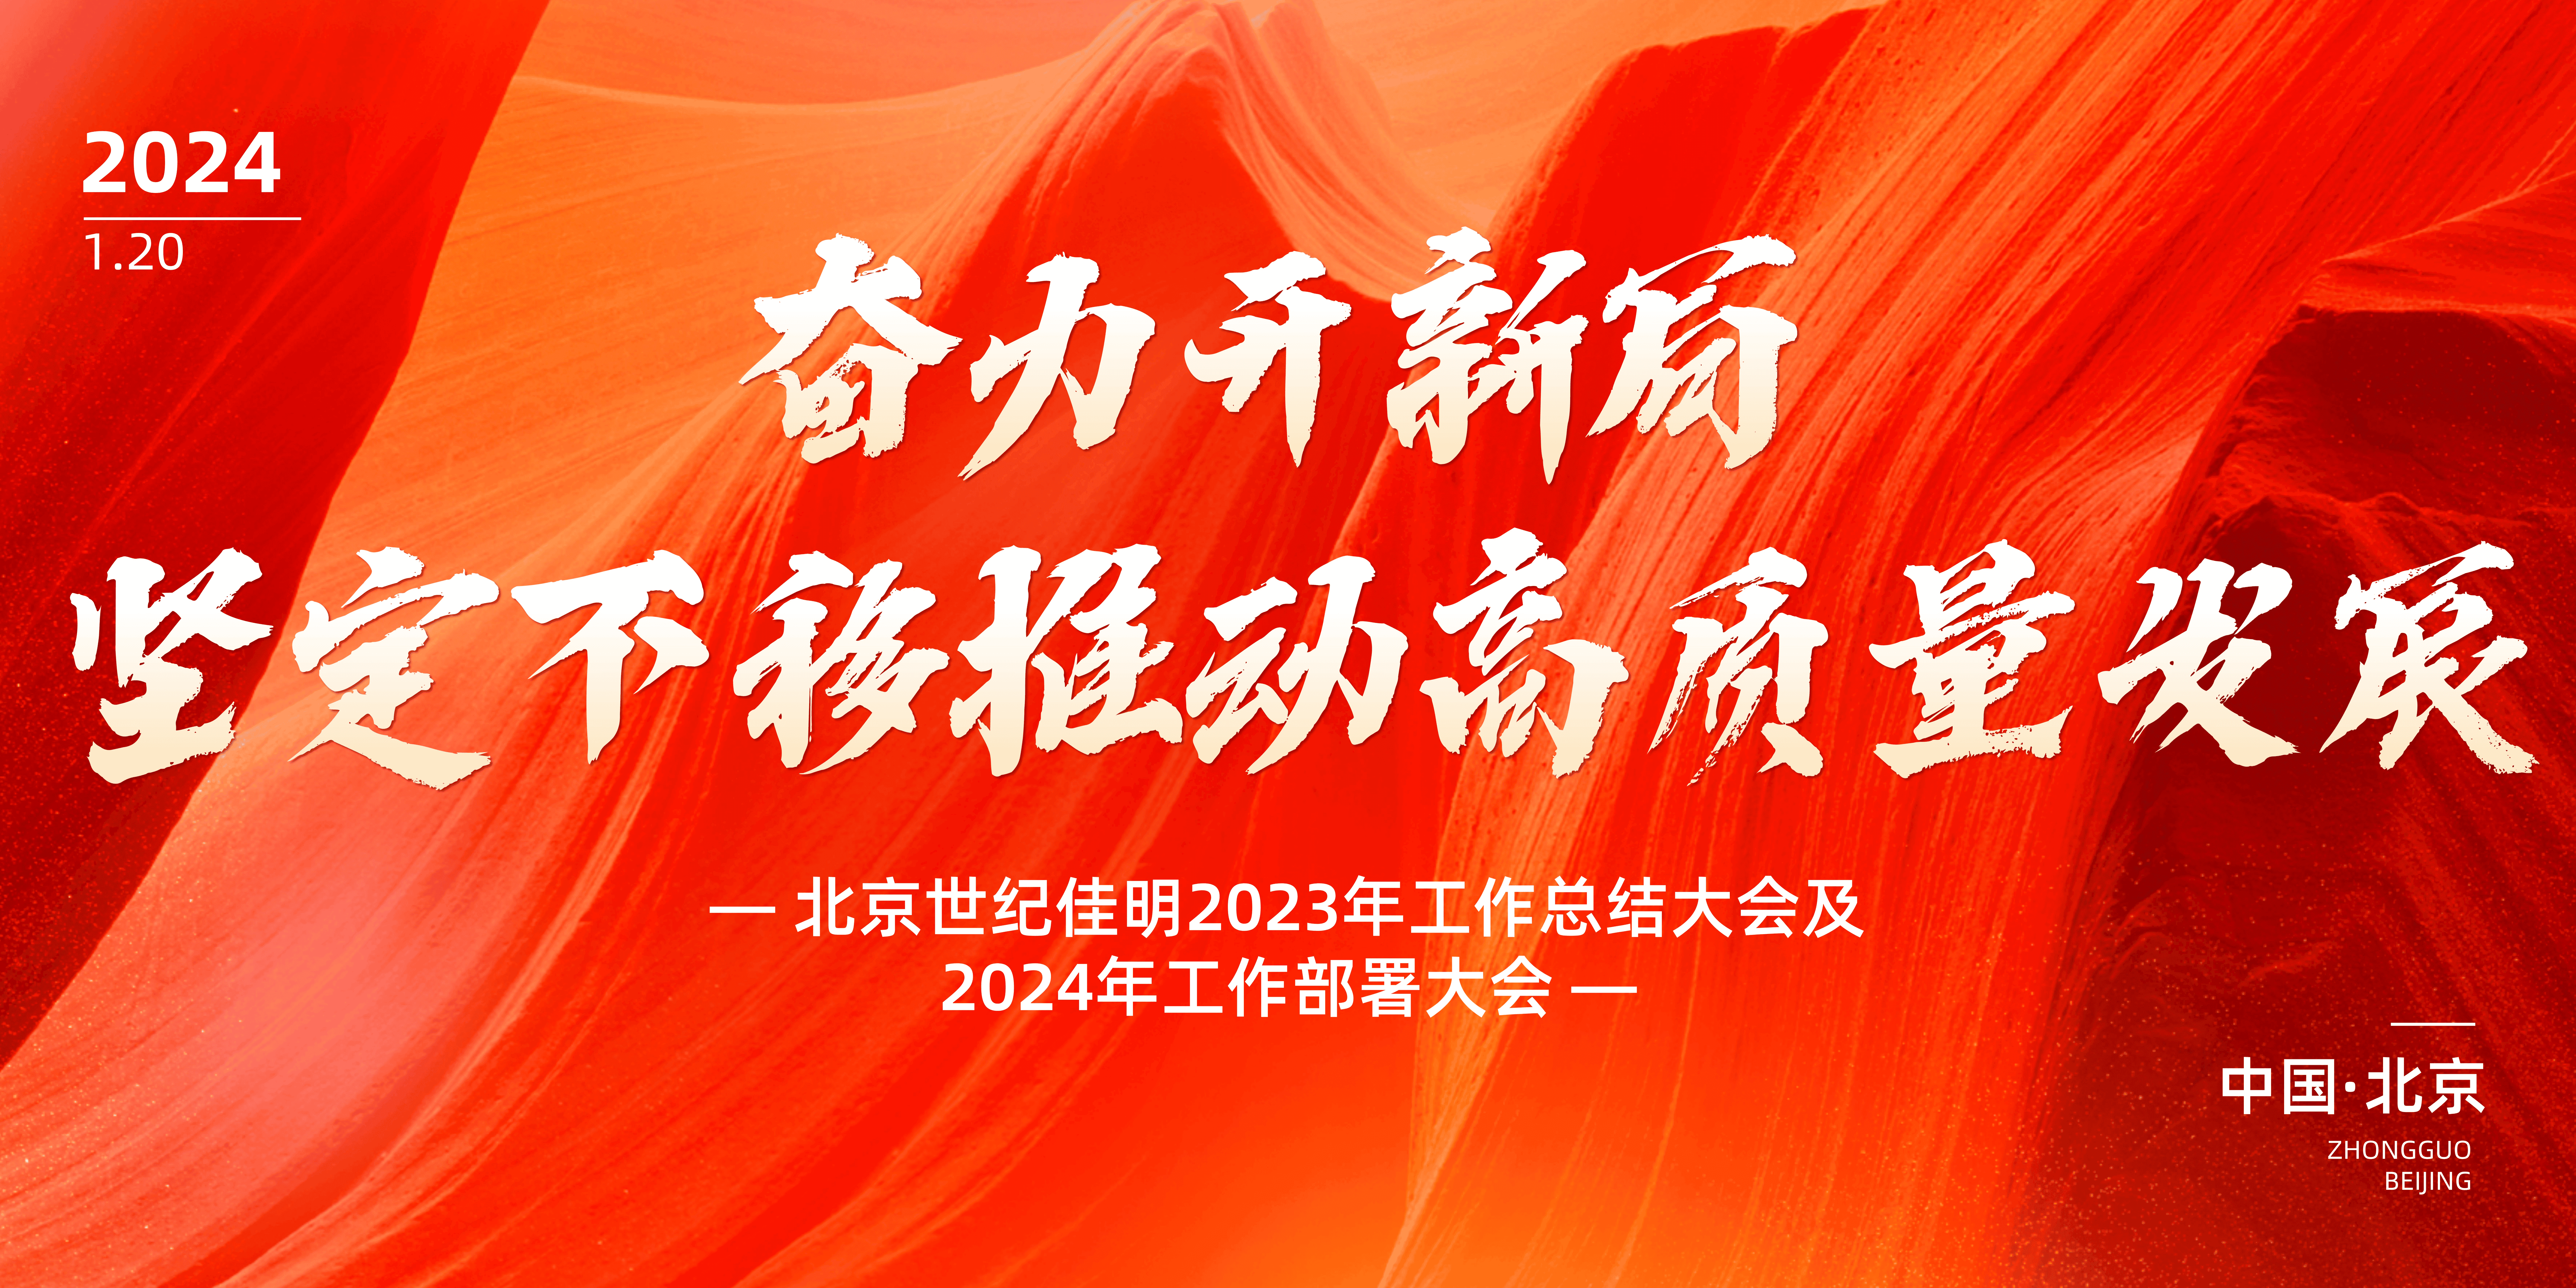 北京世纪佳明2023年度工作总结大会顺利召开